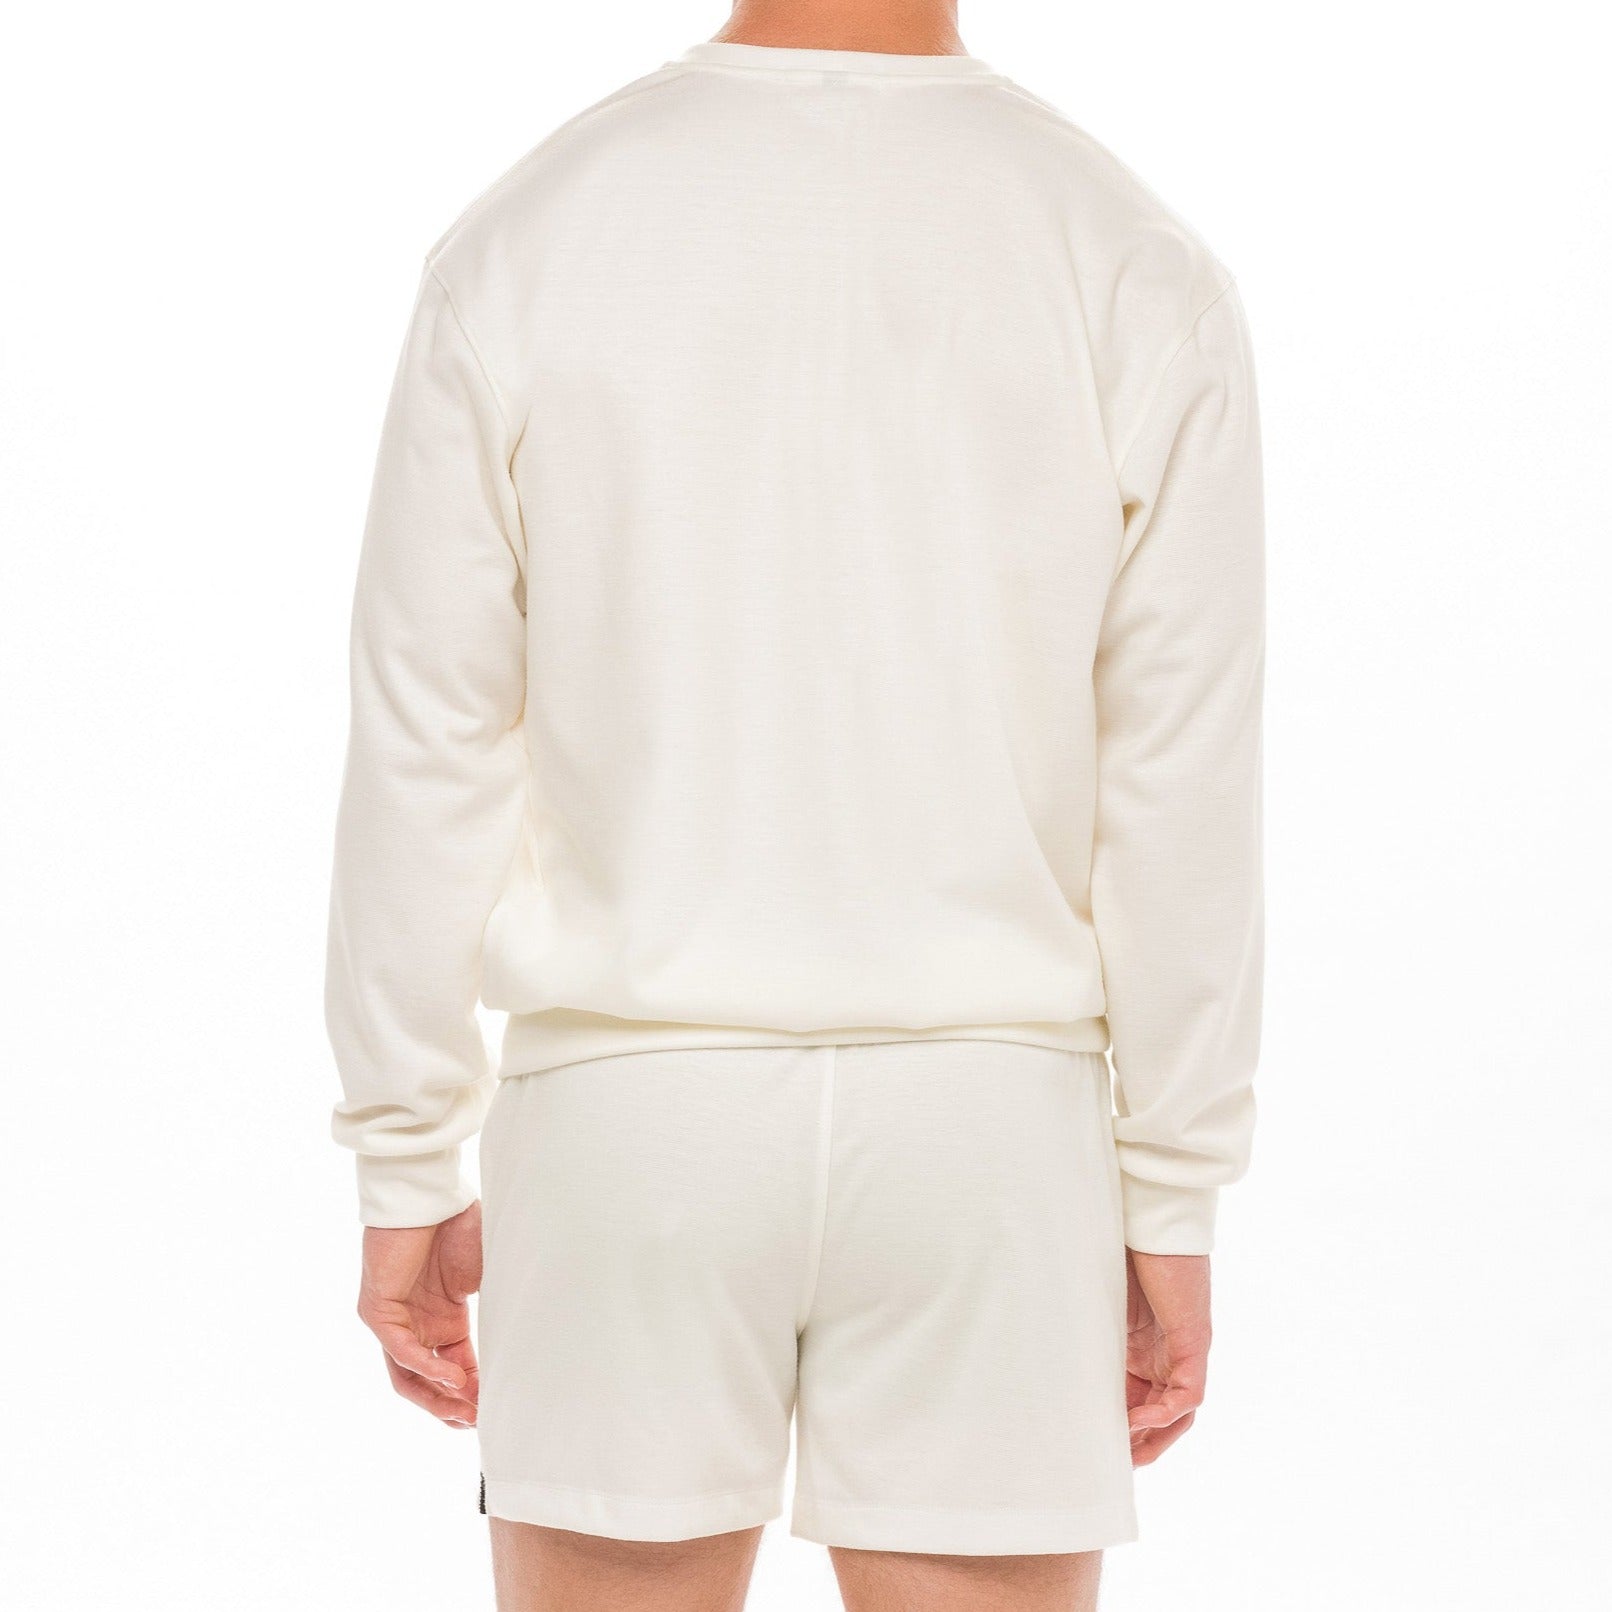 SAMMY Menswear® Men's Leisure Crew Sweatshirt In Snow